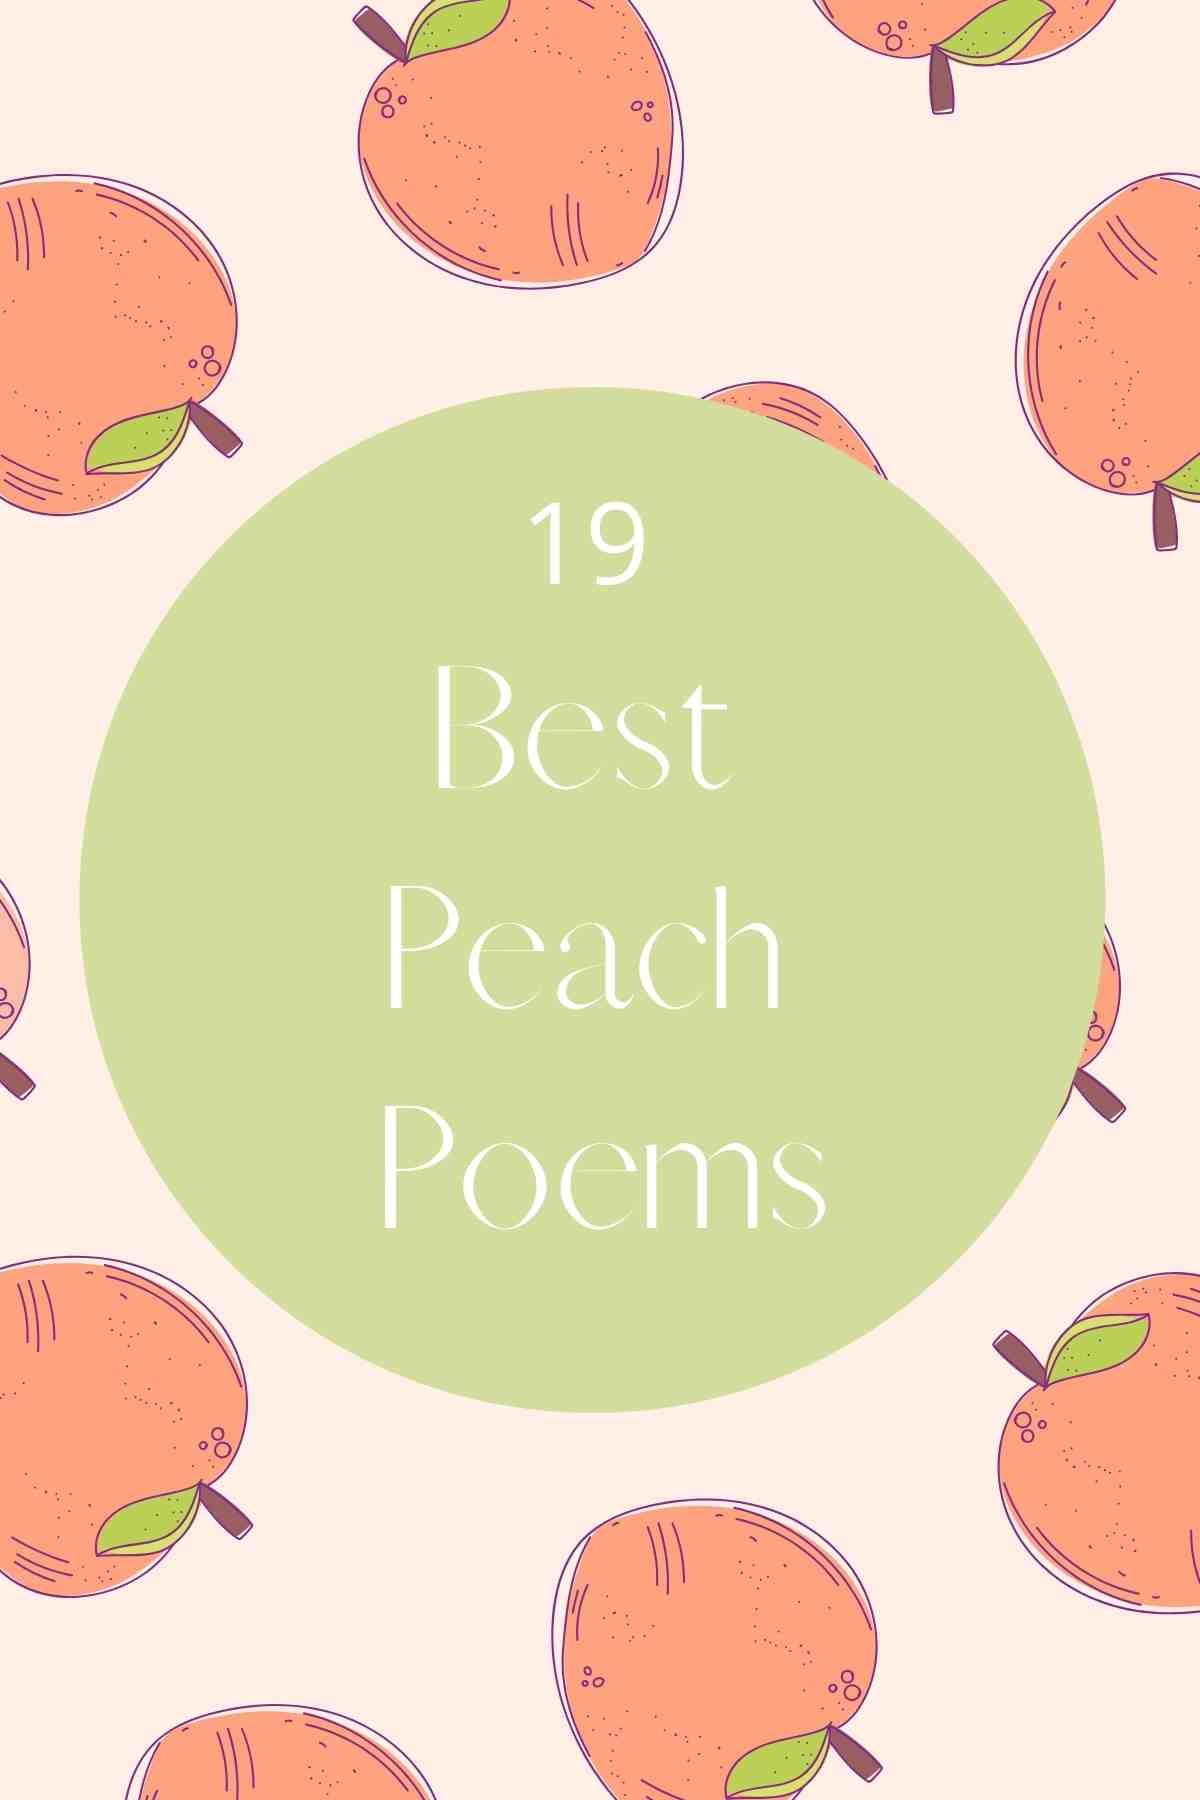 Juicy Peachy Poems